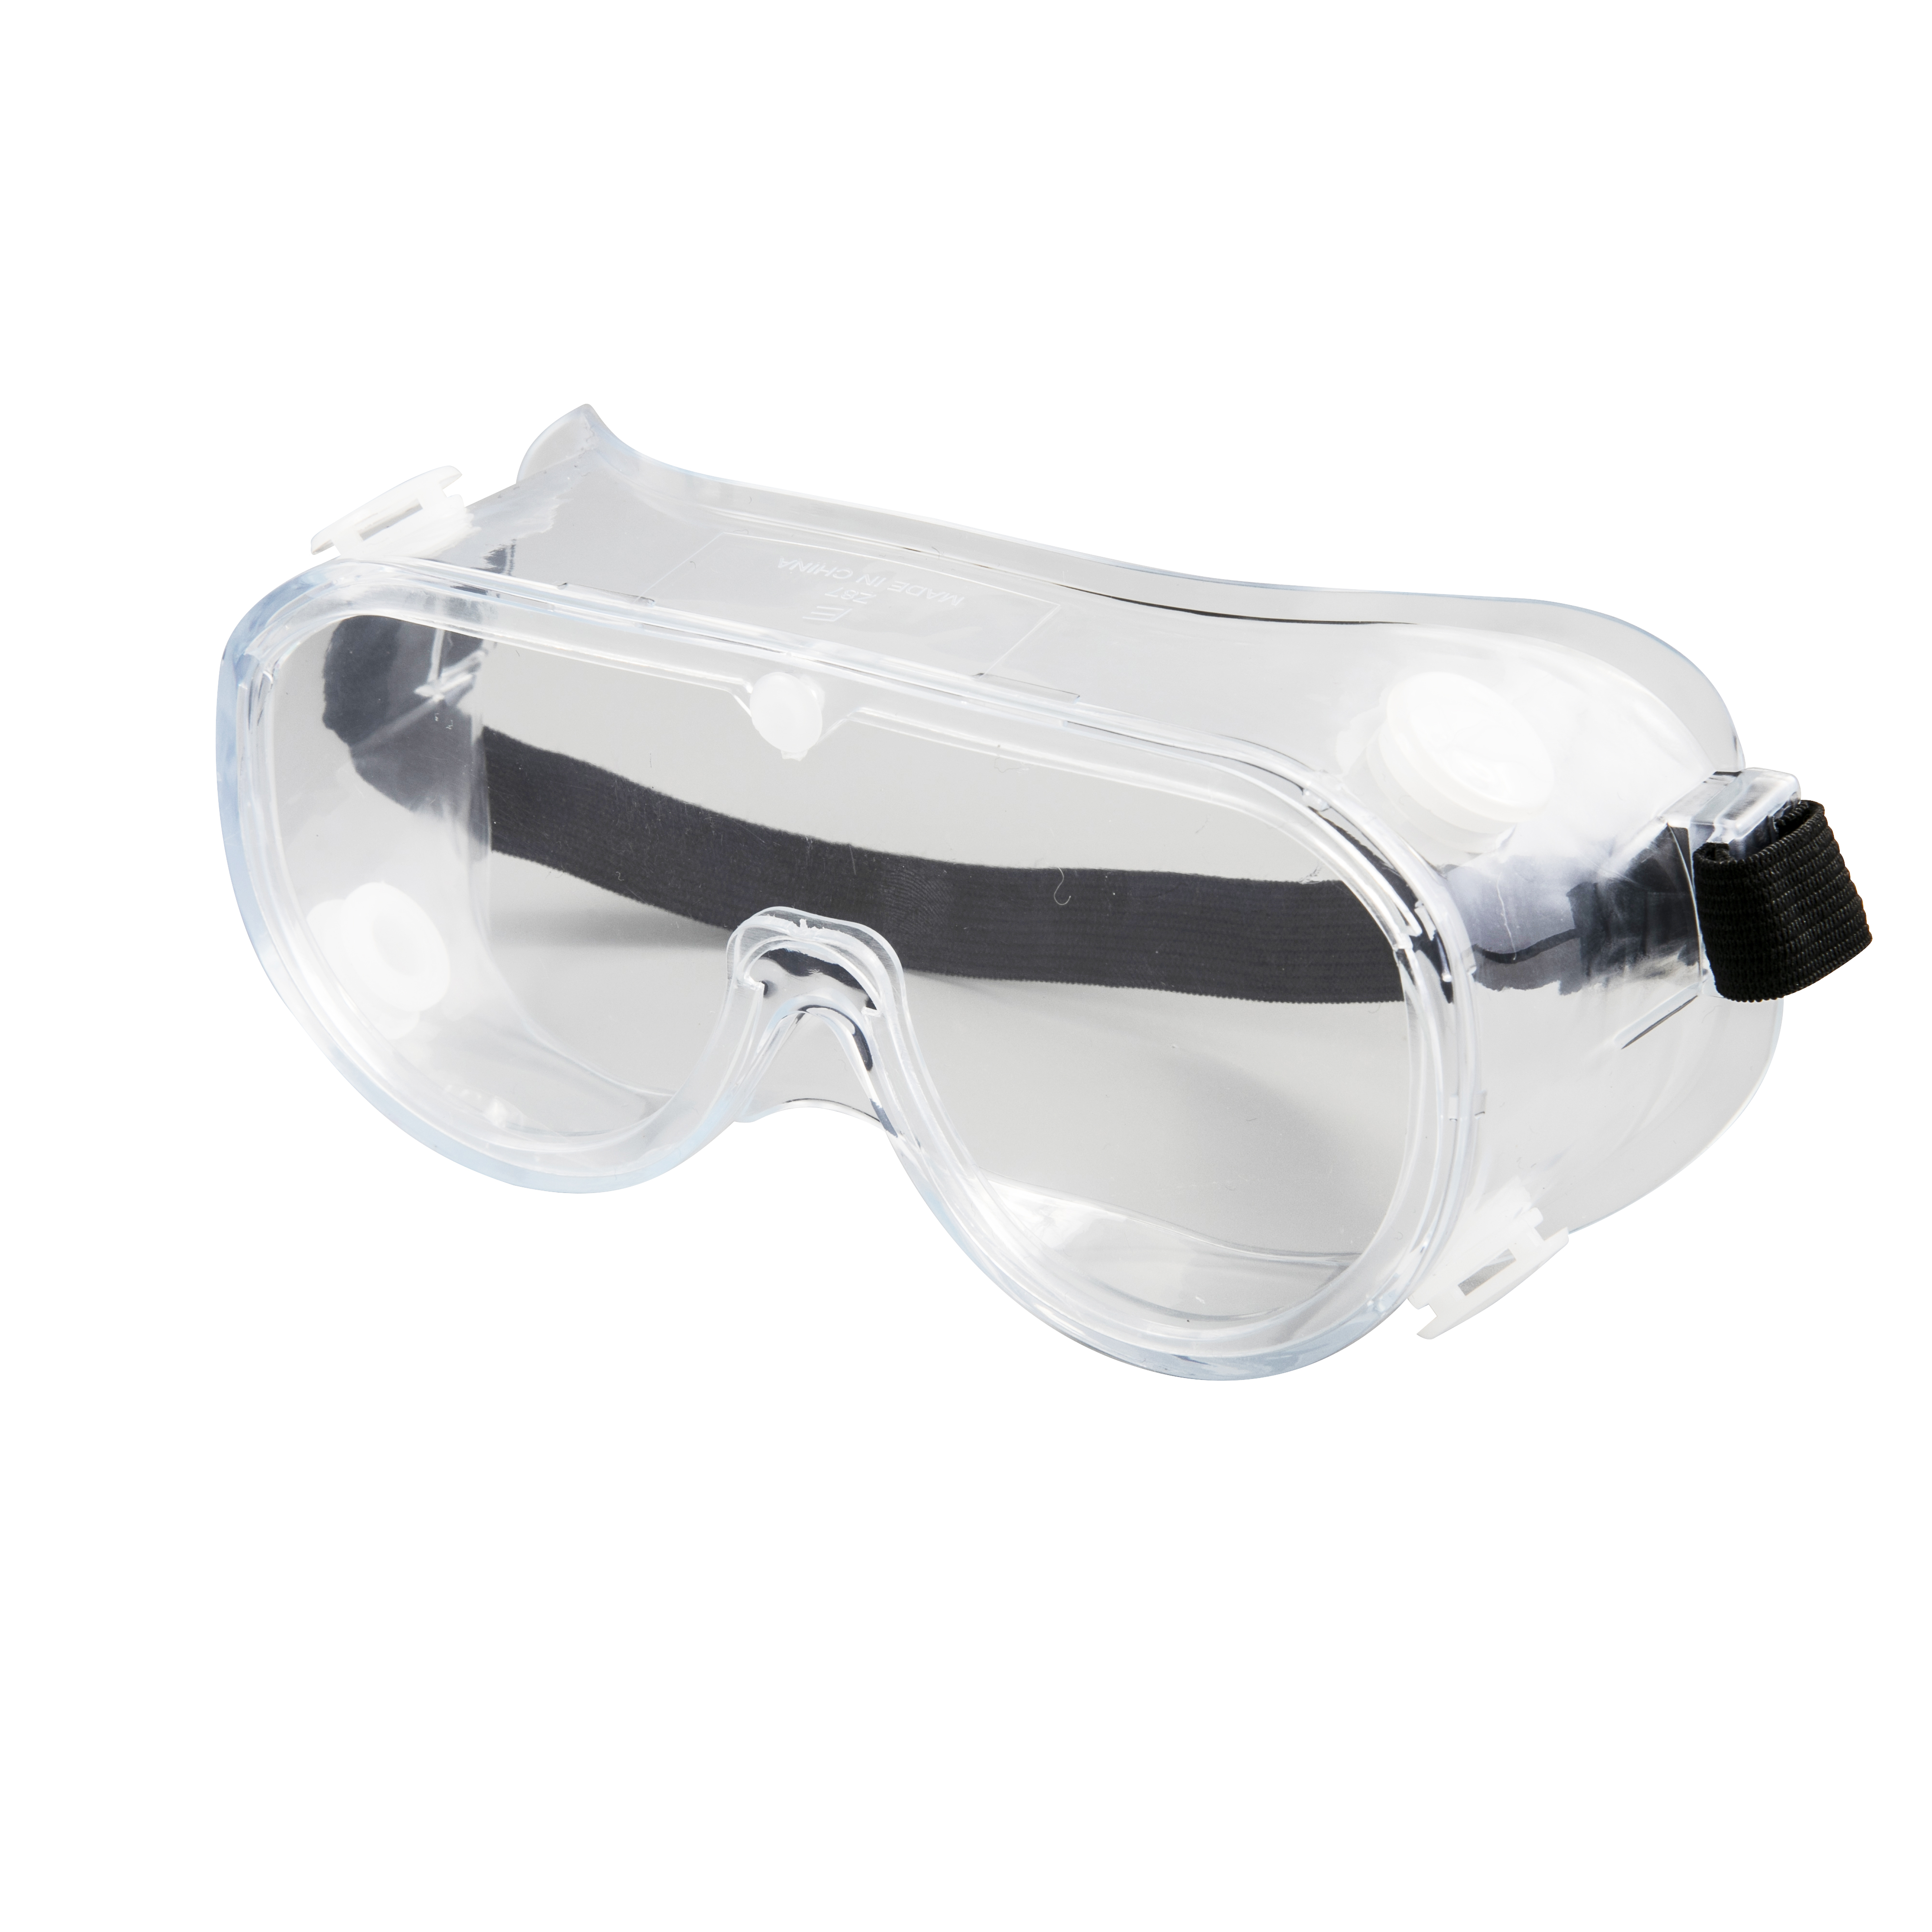 Anti Virus medicinske sikkerhedsbriller